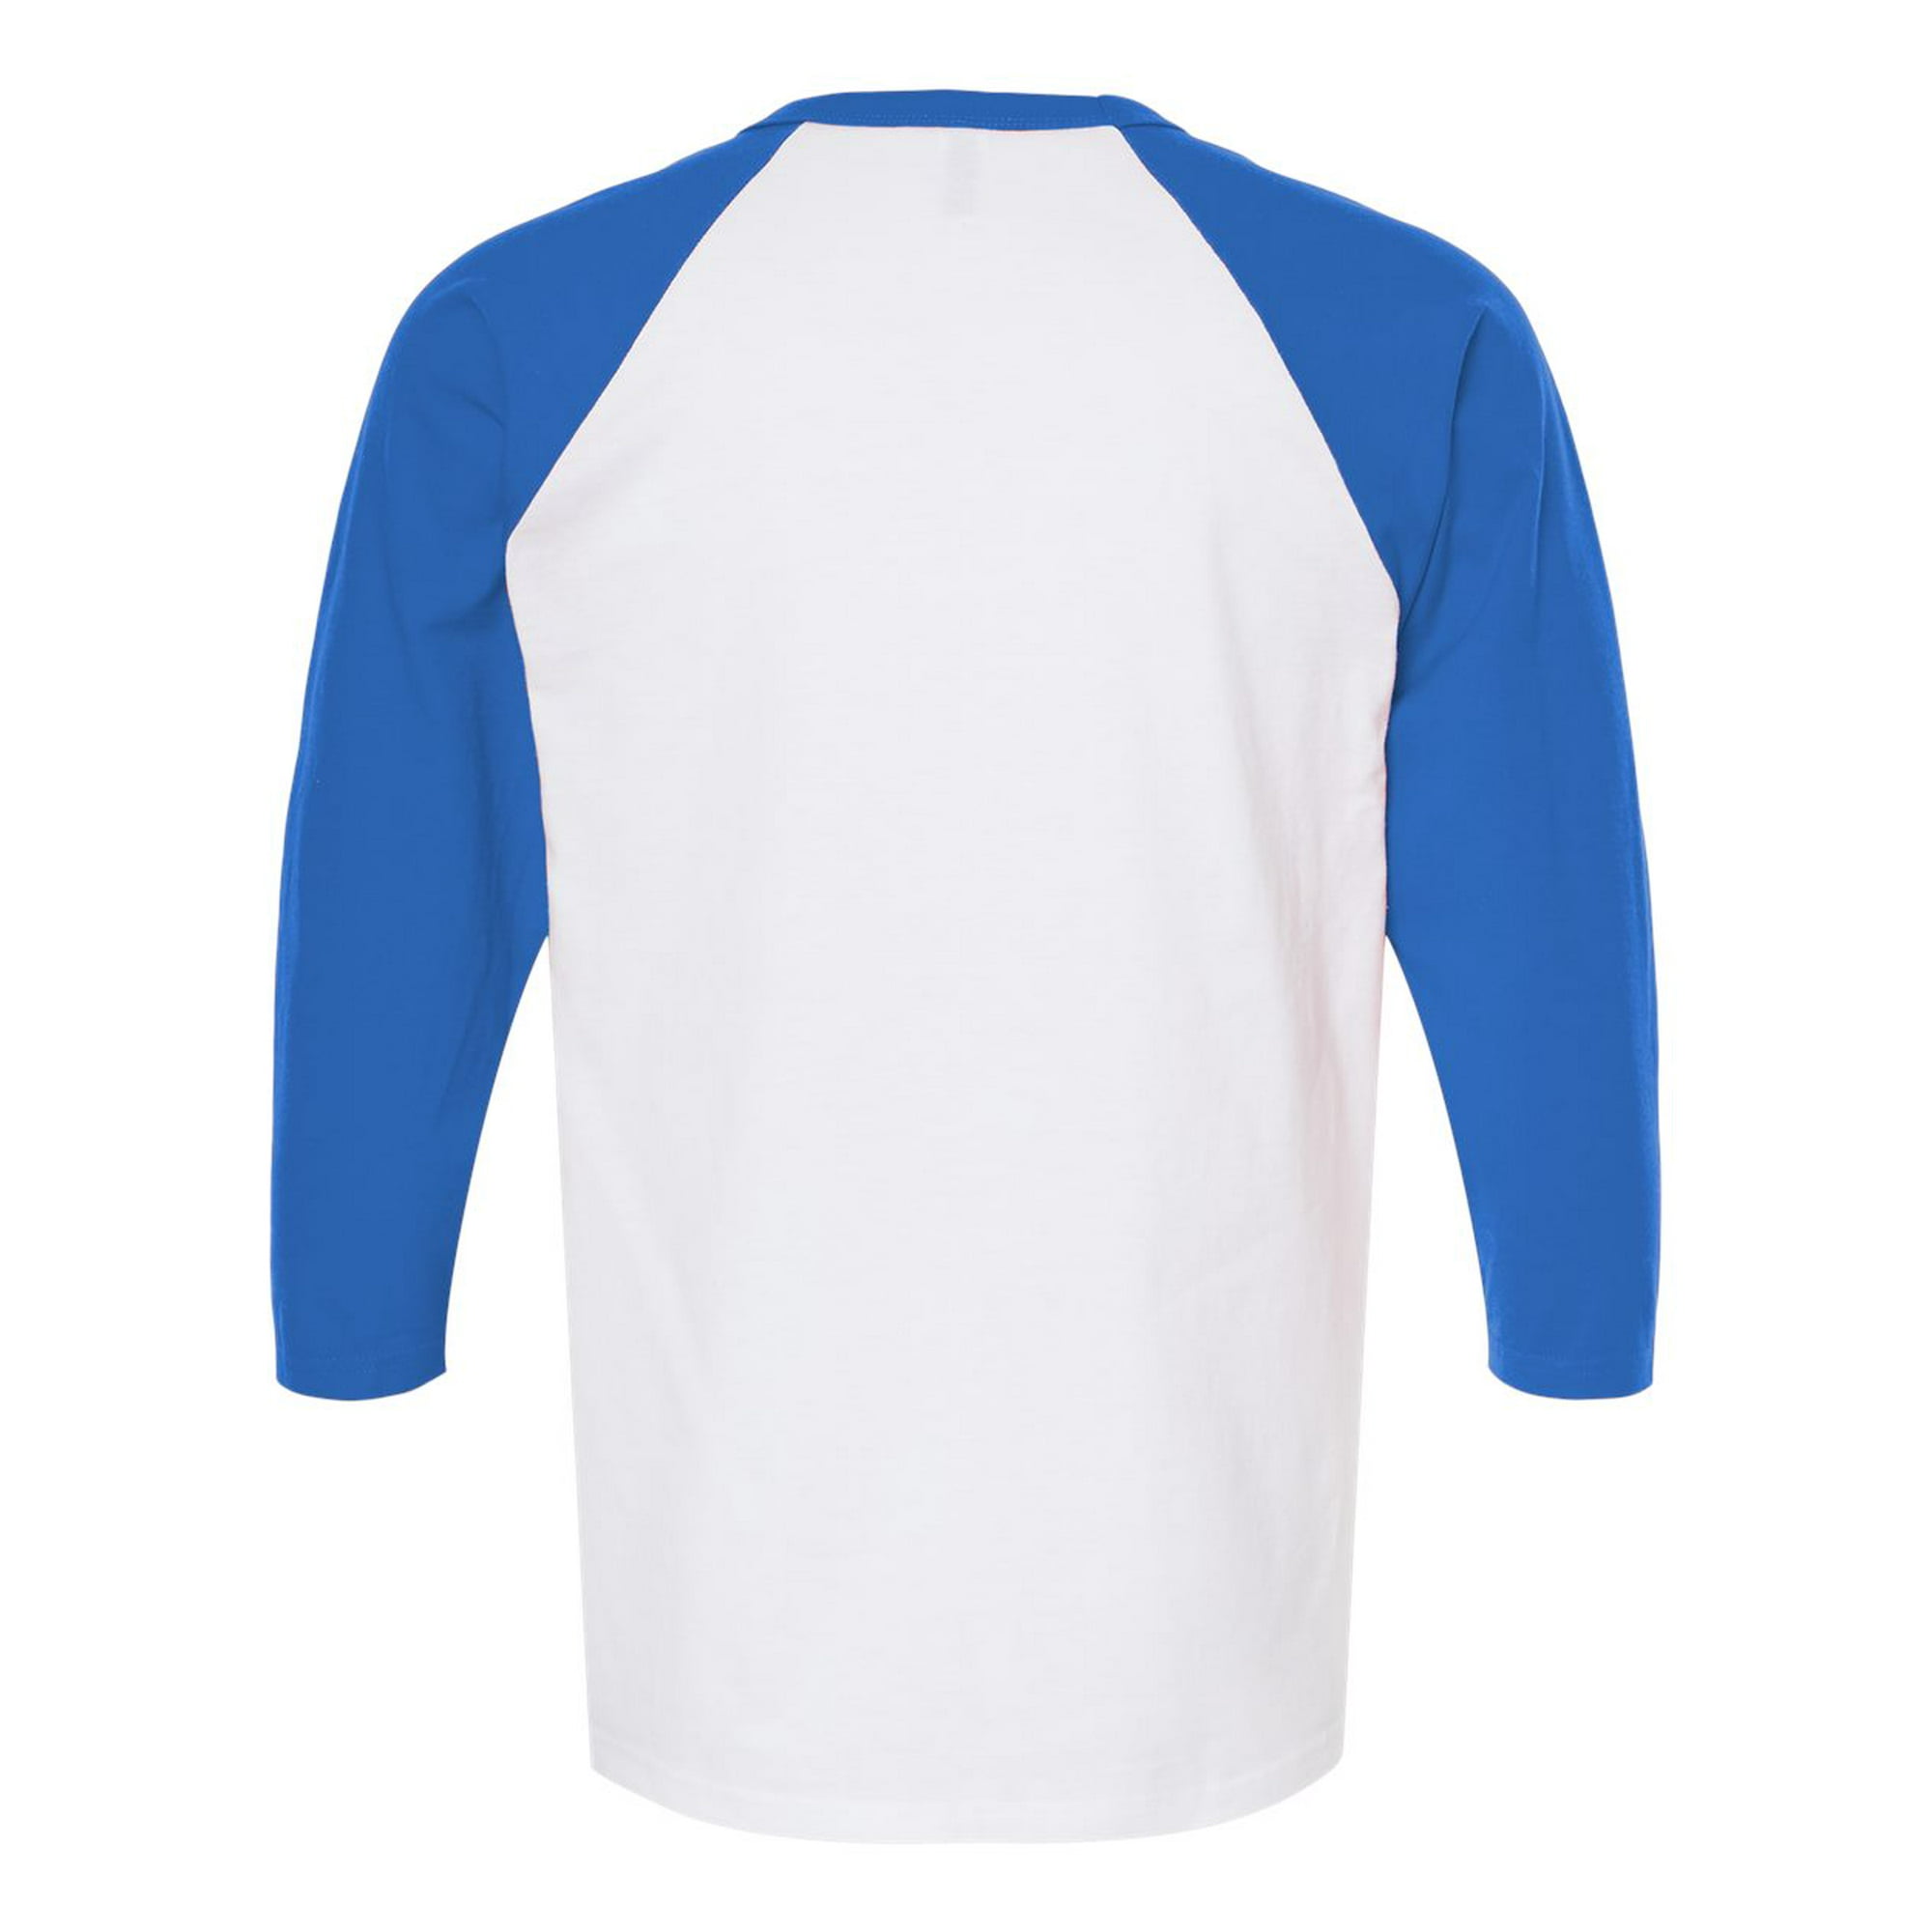 M&O 5540 - Raglan Three-Quarter Sleeve Baseball T-Shirt